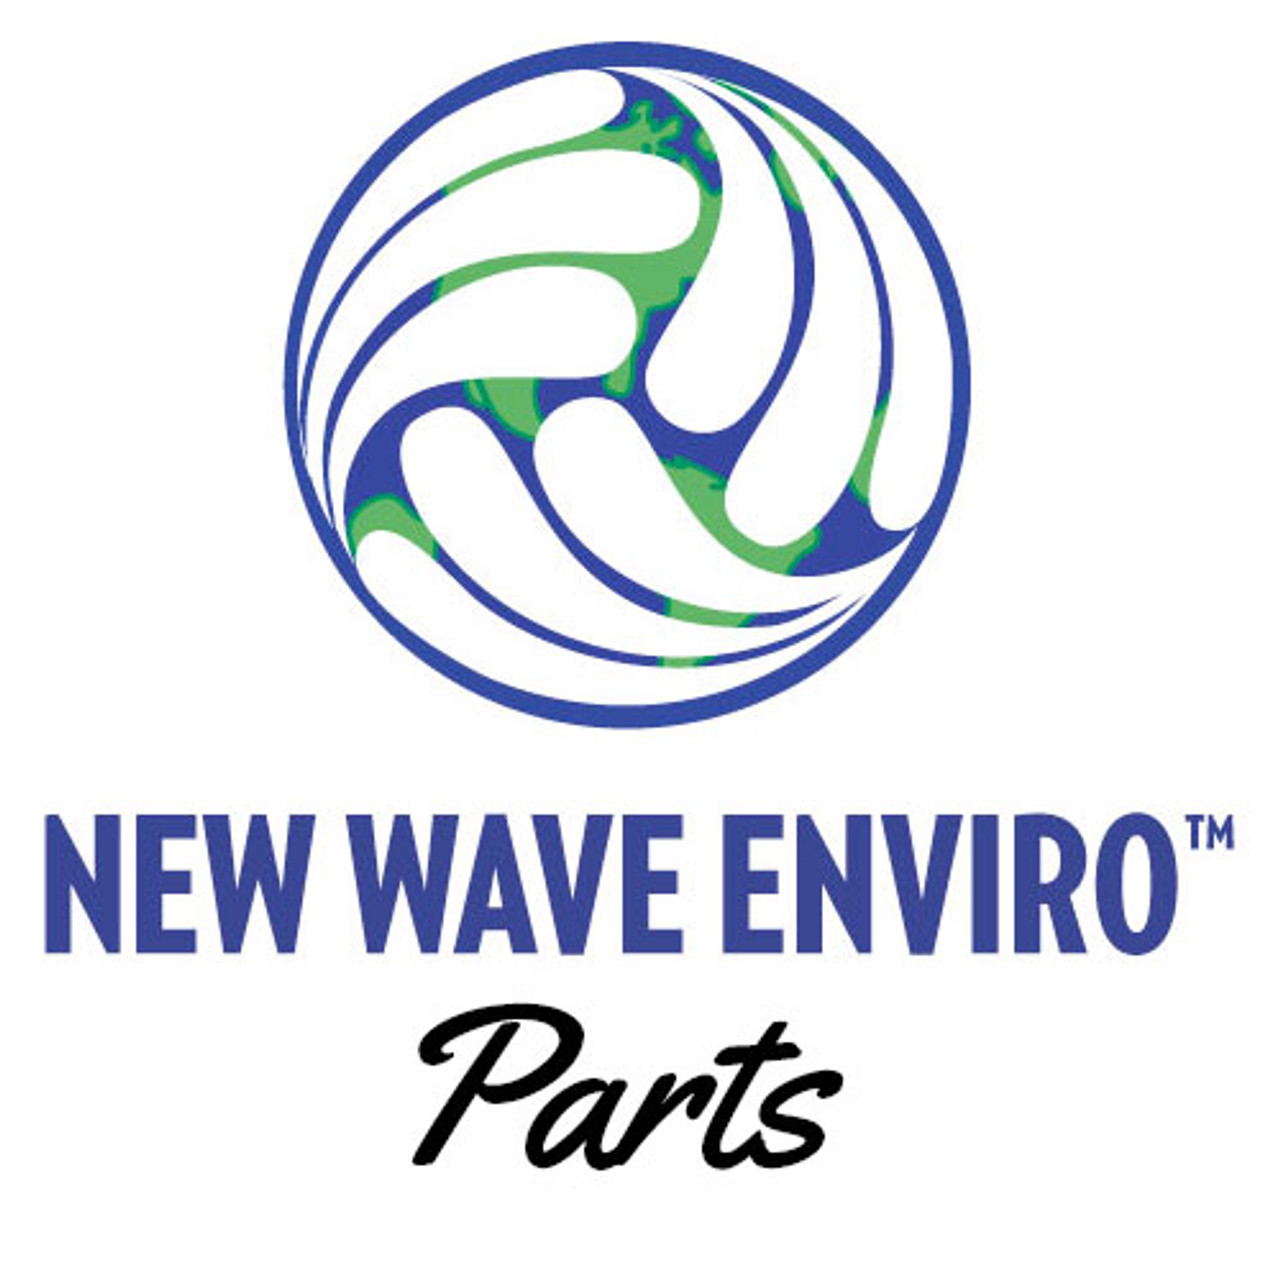 New Wave Parts - Nourishing World